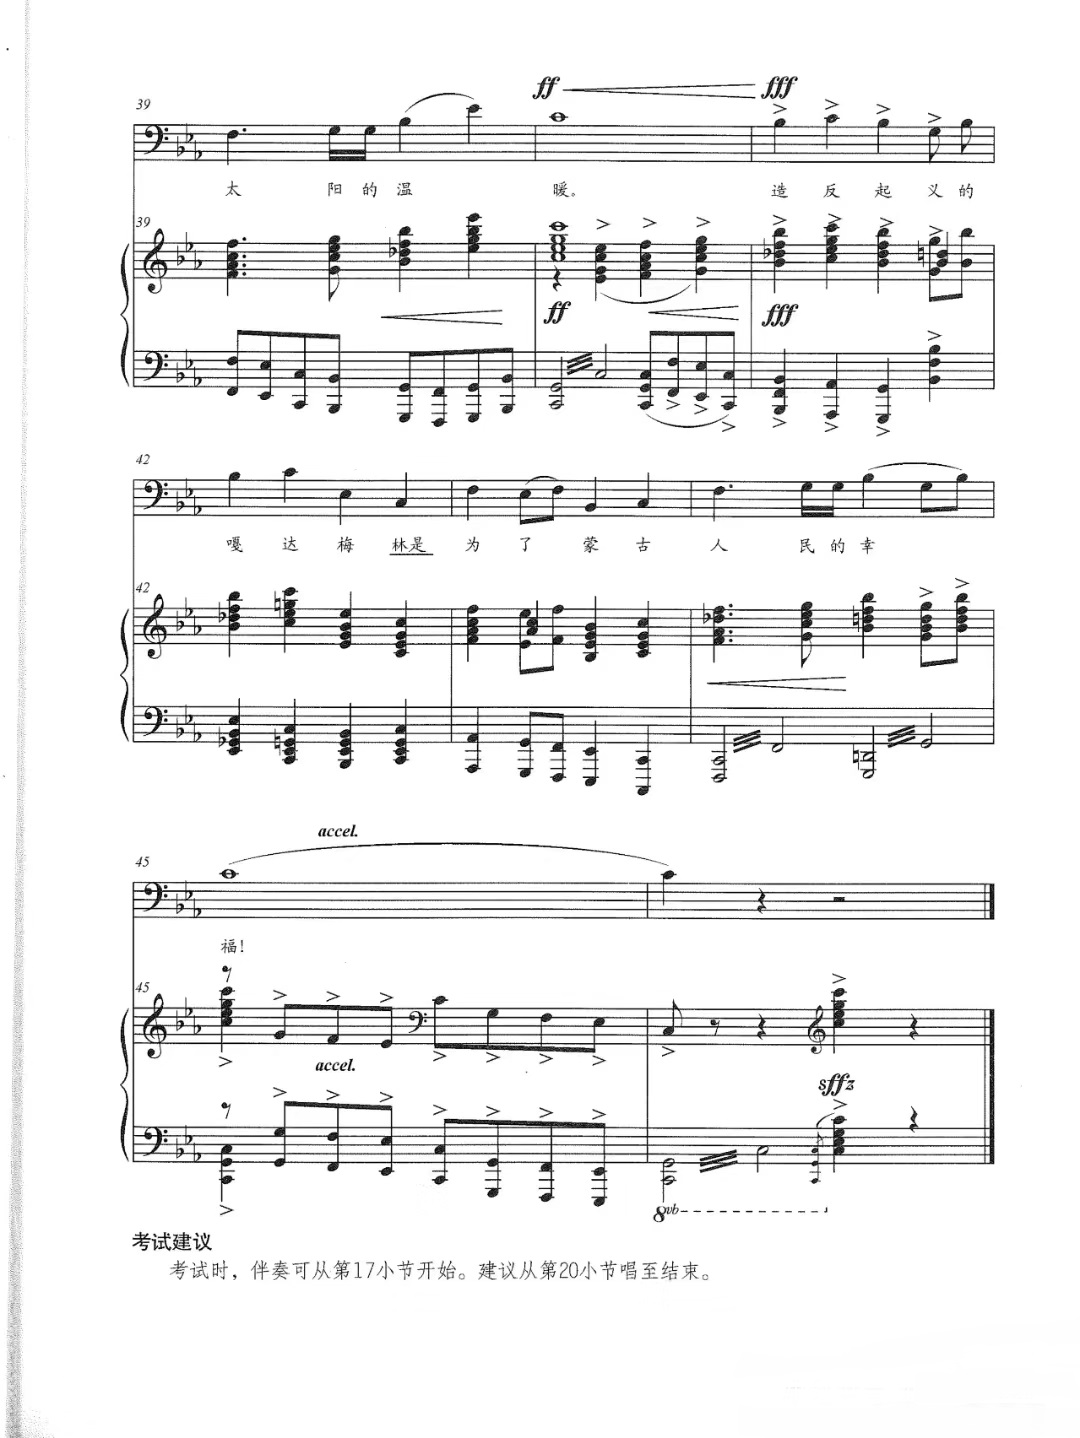 【嘎达梅林】的钢琴谱简谱 – 蒙古民歌